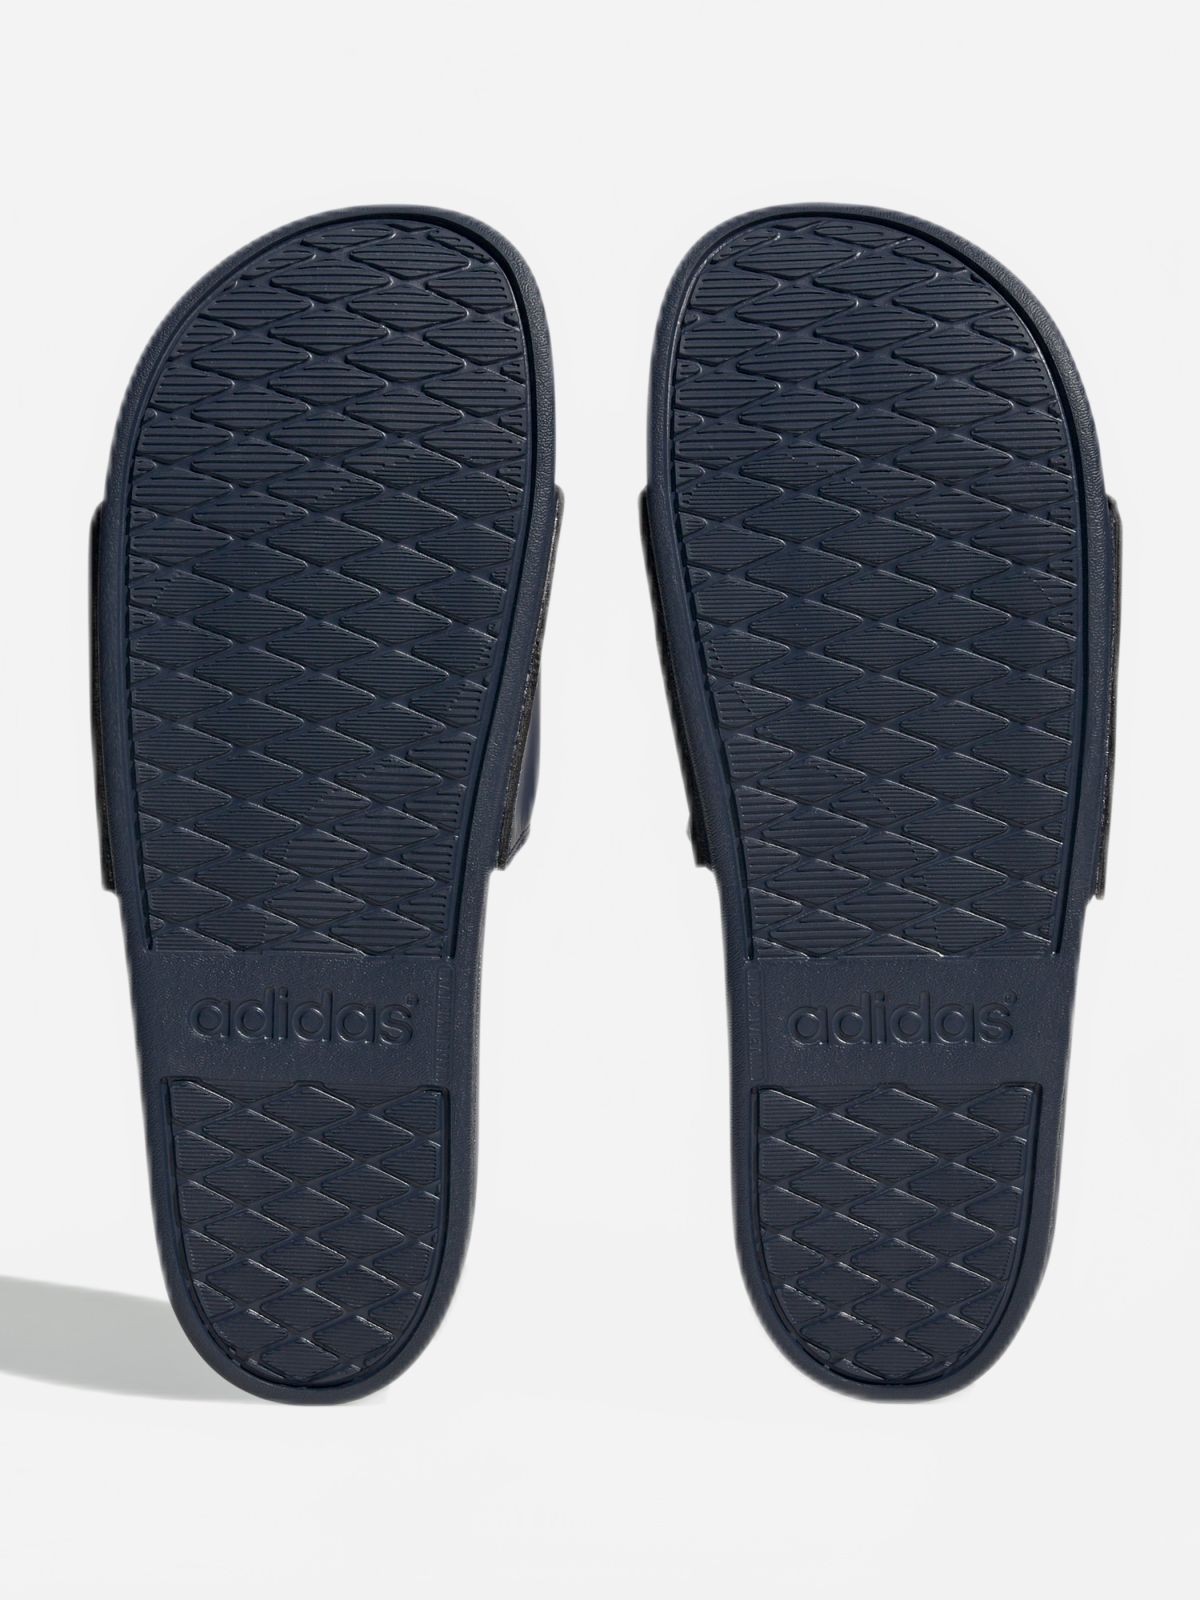  כפכפי סלייד adidas Adilette Comfort / גברים של ADIDAS Originals